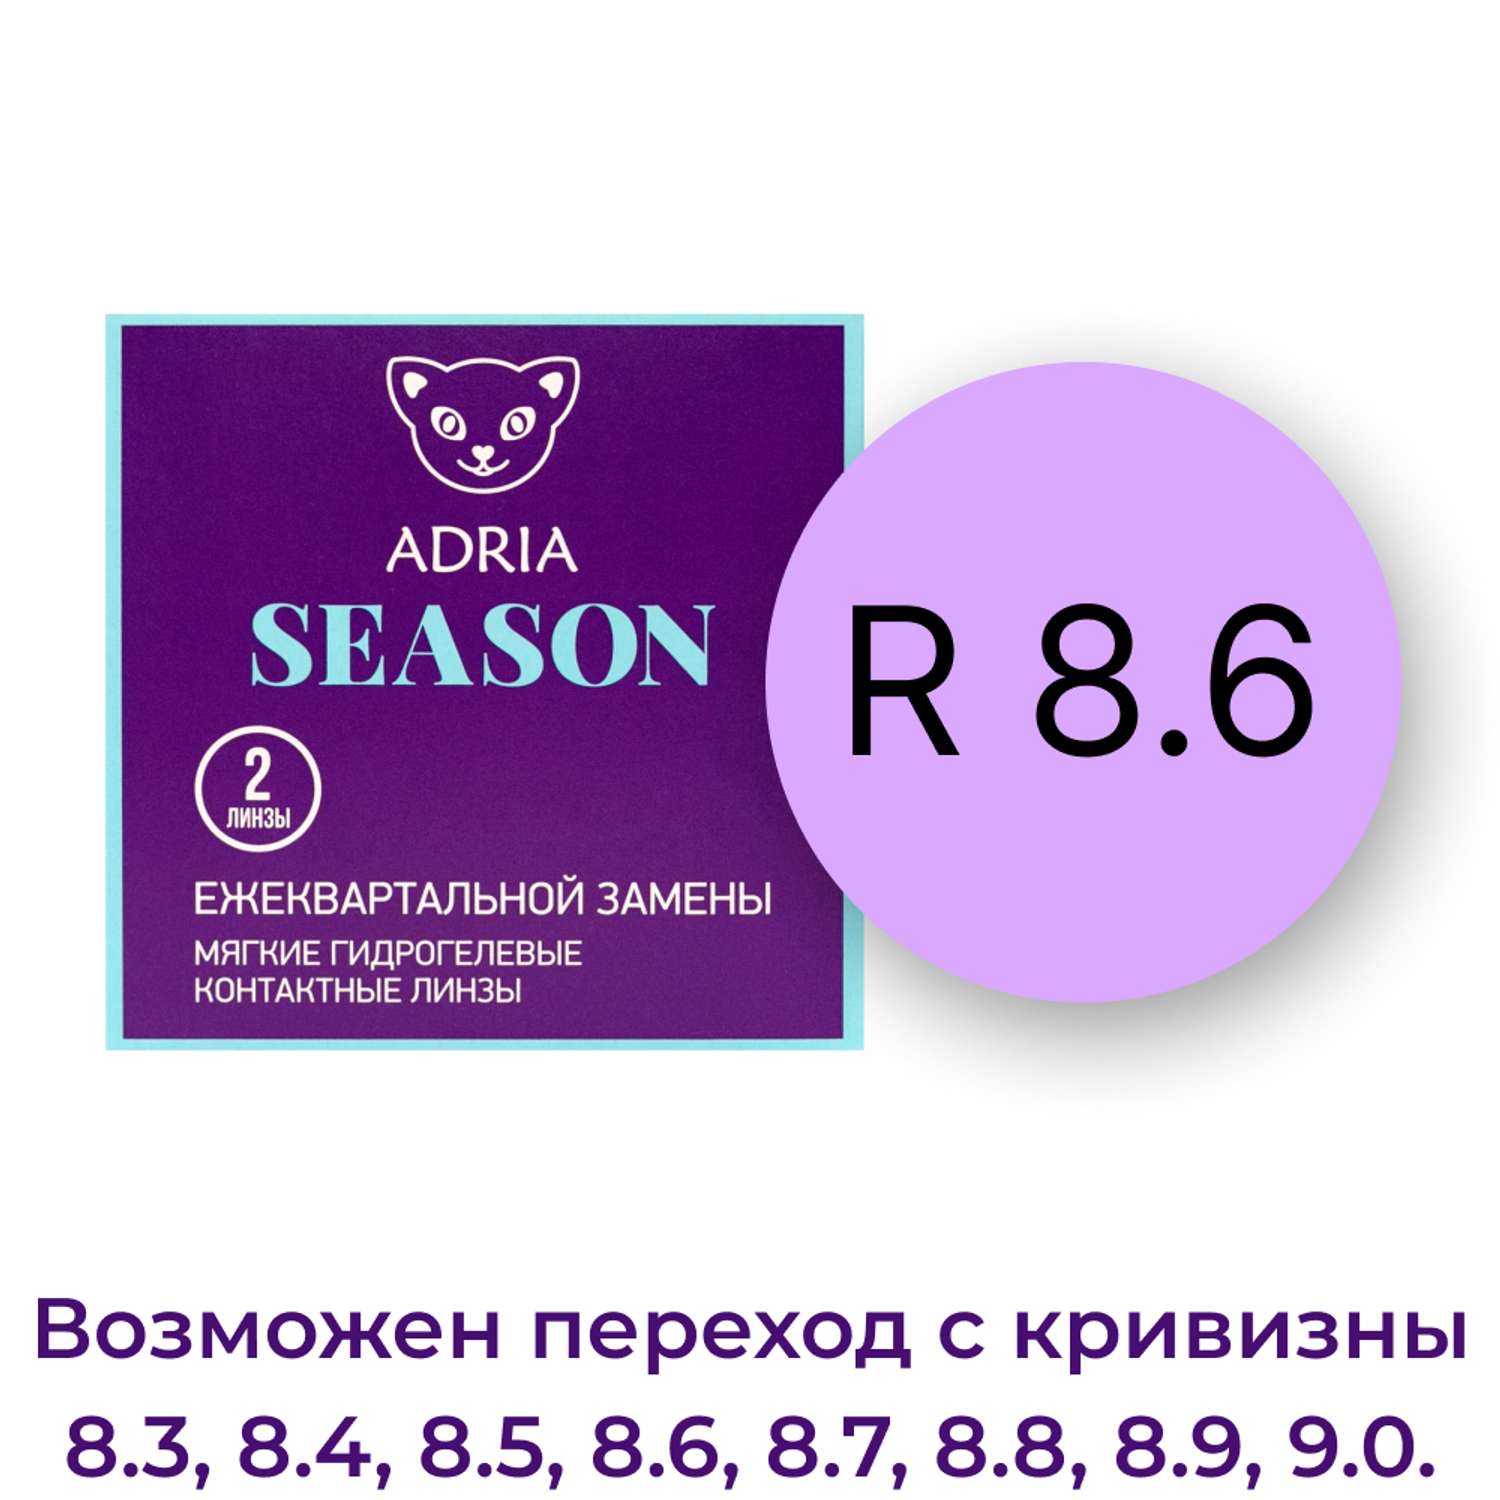 Контактные линзы ADRIA Season 2 линзы R 8.6 -3.75 - фото 3